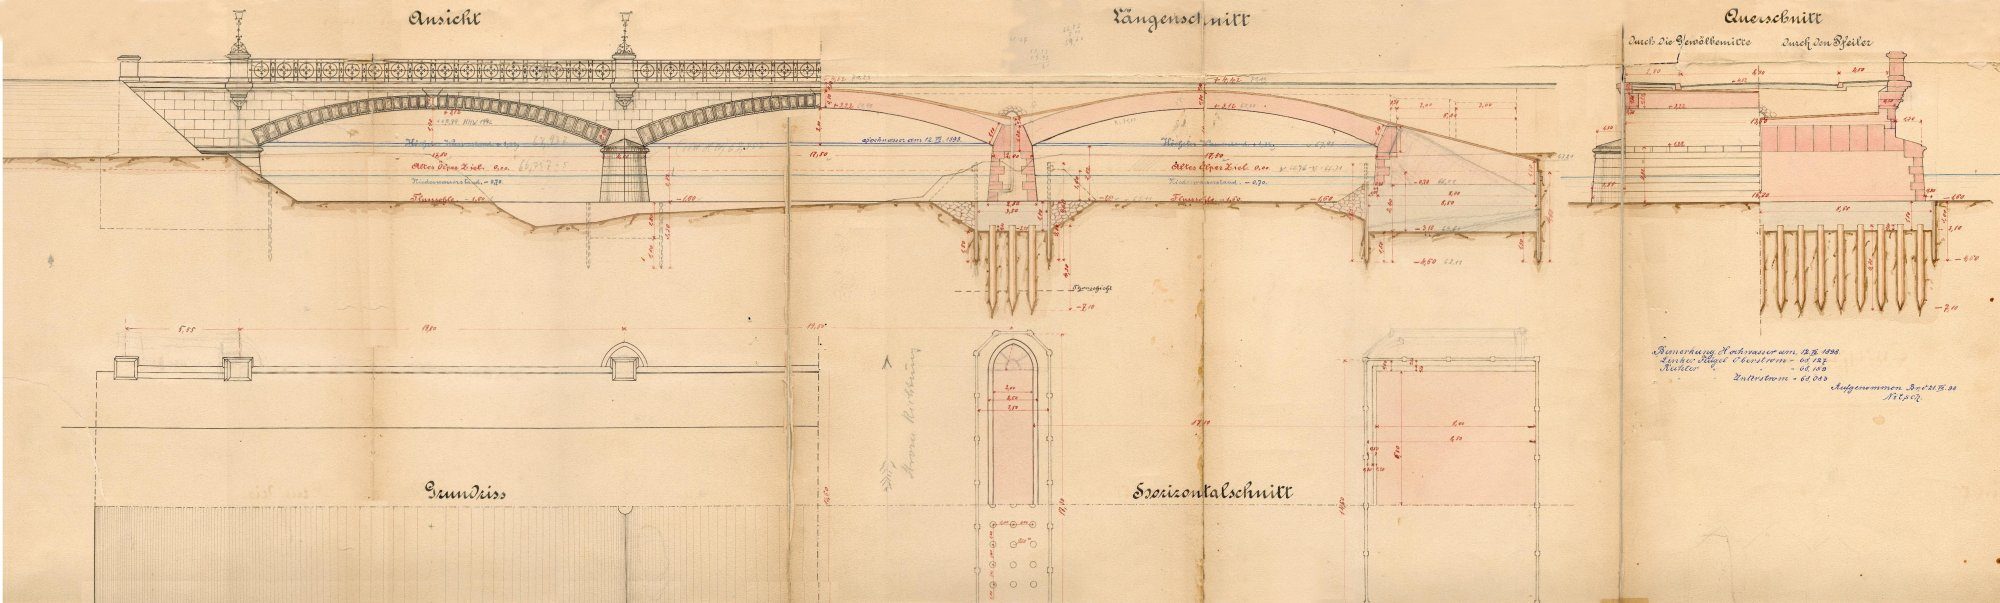 Wendenringbrücke, Ausführungsplan, Ansicht mit Schnitt, 1889 (Wird bei Klick vergrößert)